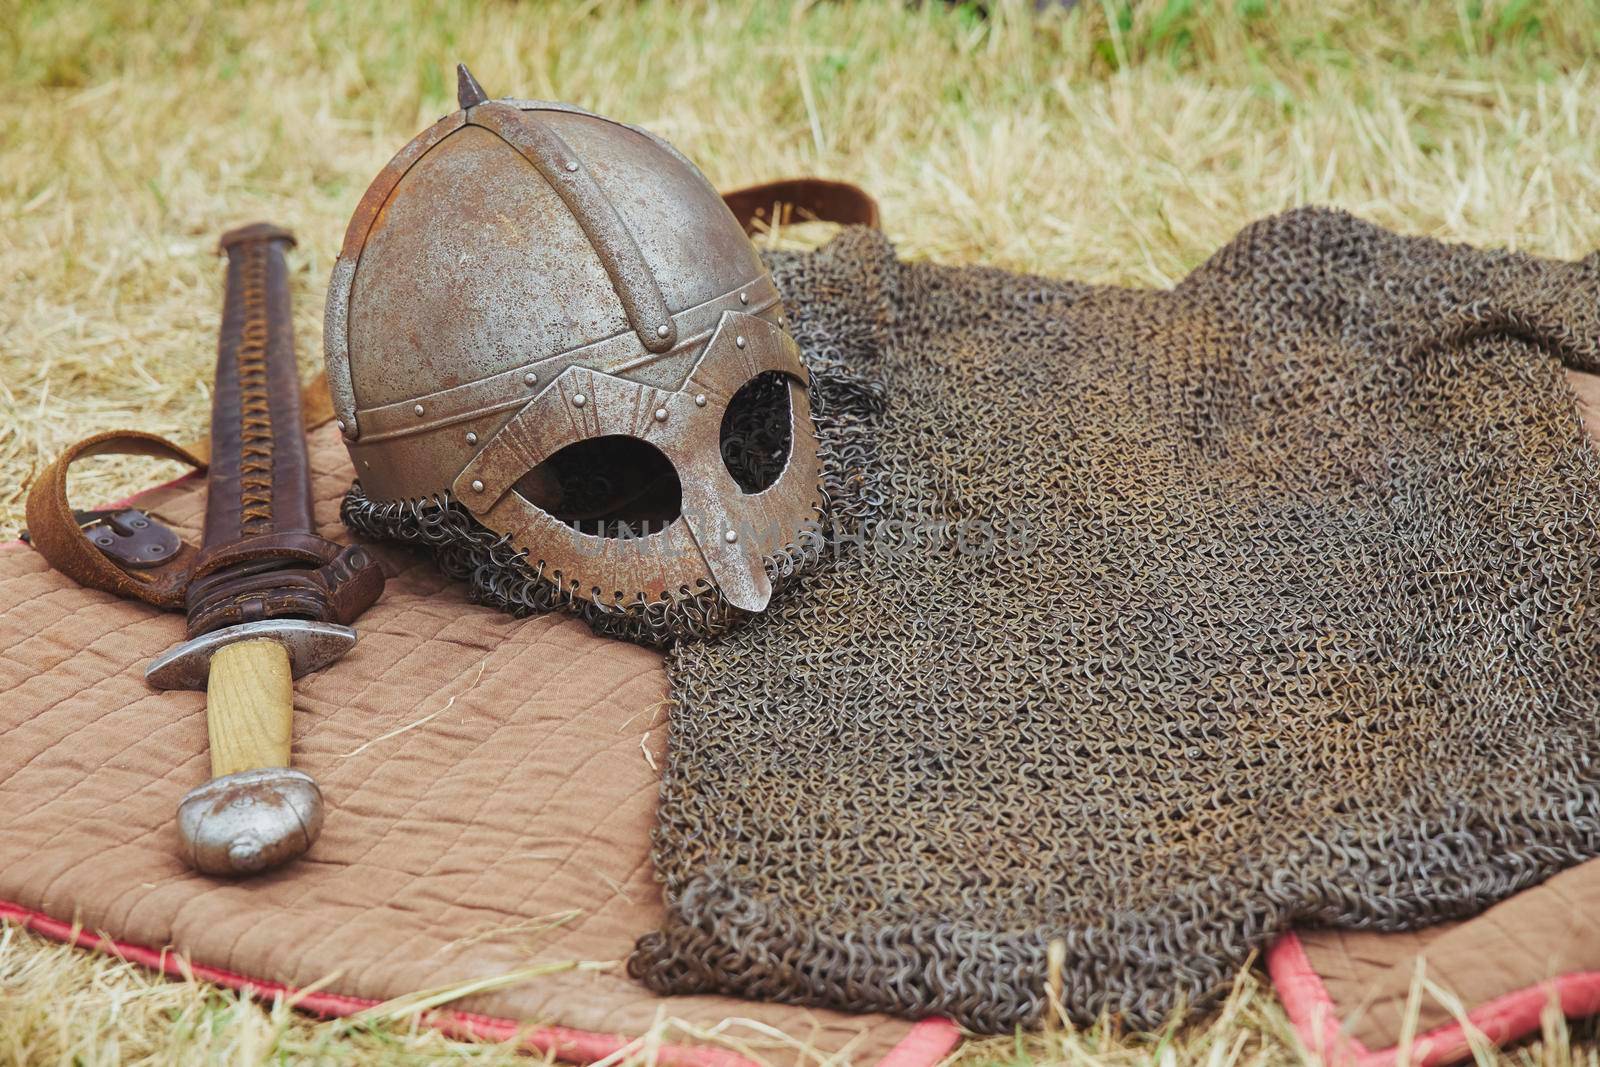 Old Viking armor on yellowed grass. Viking Festival in Denmark